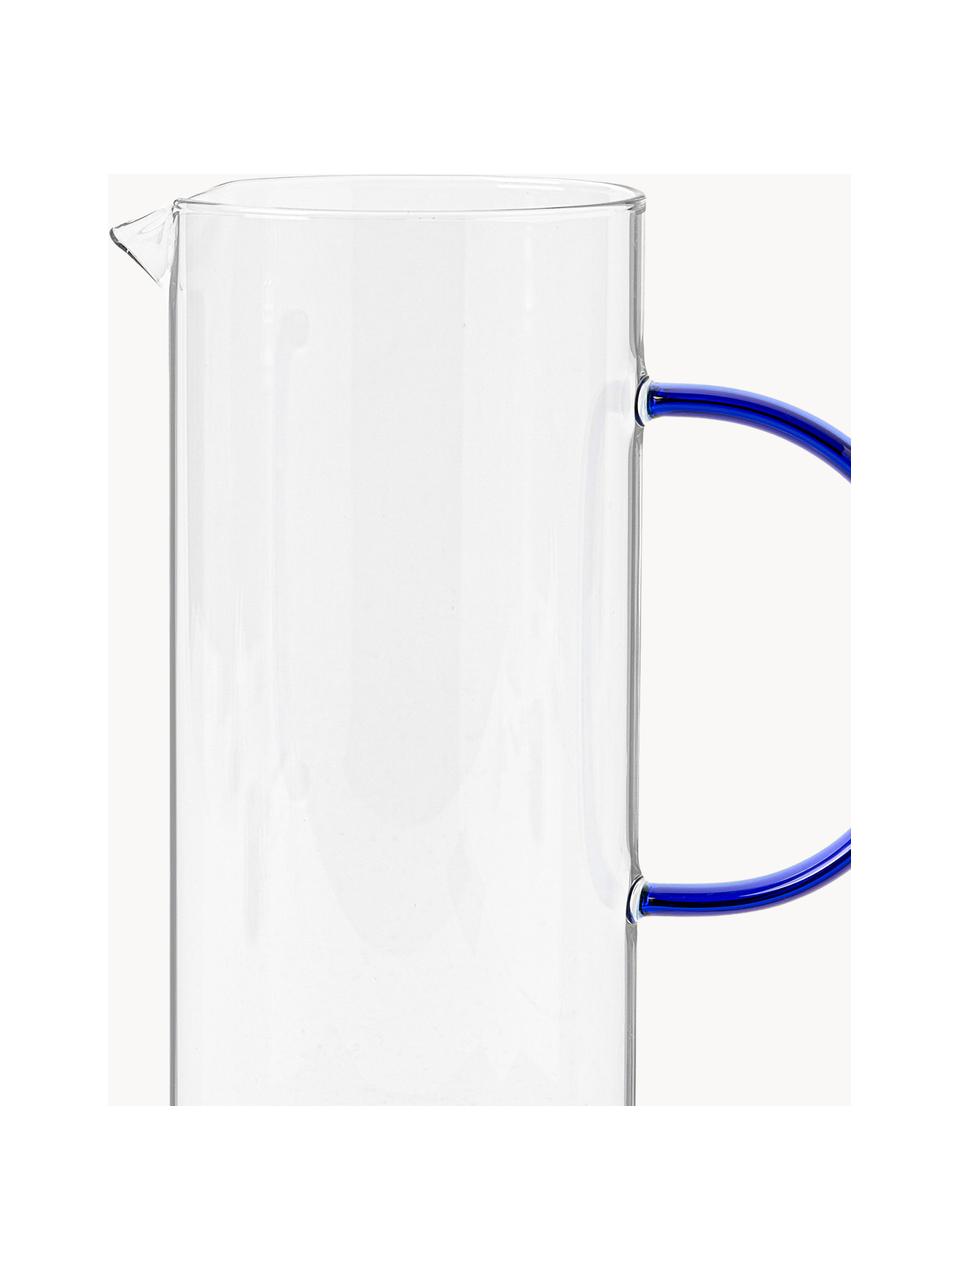 Karafa na vodu Torino, 1,1 l, Borosilikátové sklo

Objavte všestrannosť borosilikátového skla pre váš domov! Borosilikátové sklo je kvalitný, spoľahlivý a robustný materiál. Vyznačuje sa mimoriadnou tepelnou odolnosťou a preto je ideálny pre váš horúci čaj alebo kávu. V porovnaní s klasickým sklom je borosilikátové sklo odolnejšie voči rozbitiu a prasknutiu, a preto je bezpečným spoločníkom vo vašej domácnosti., Priehľadná, kráľovská modrá, 1,1 l